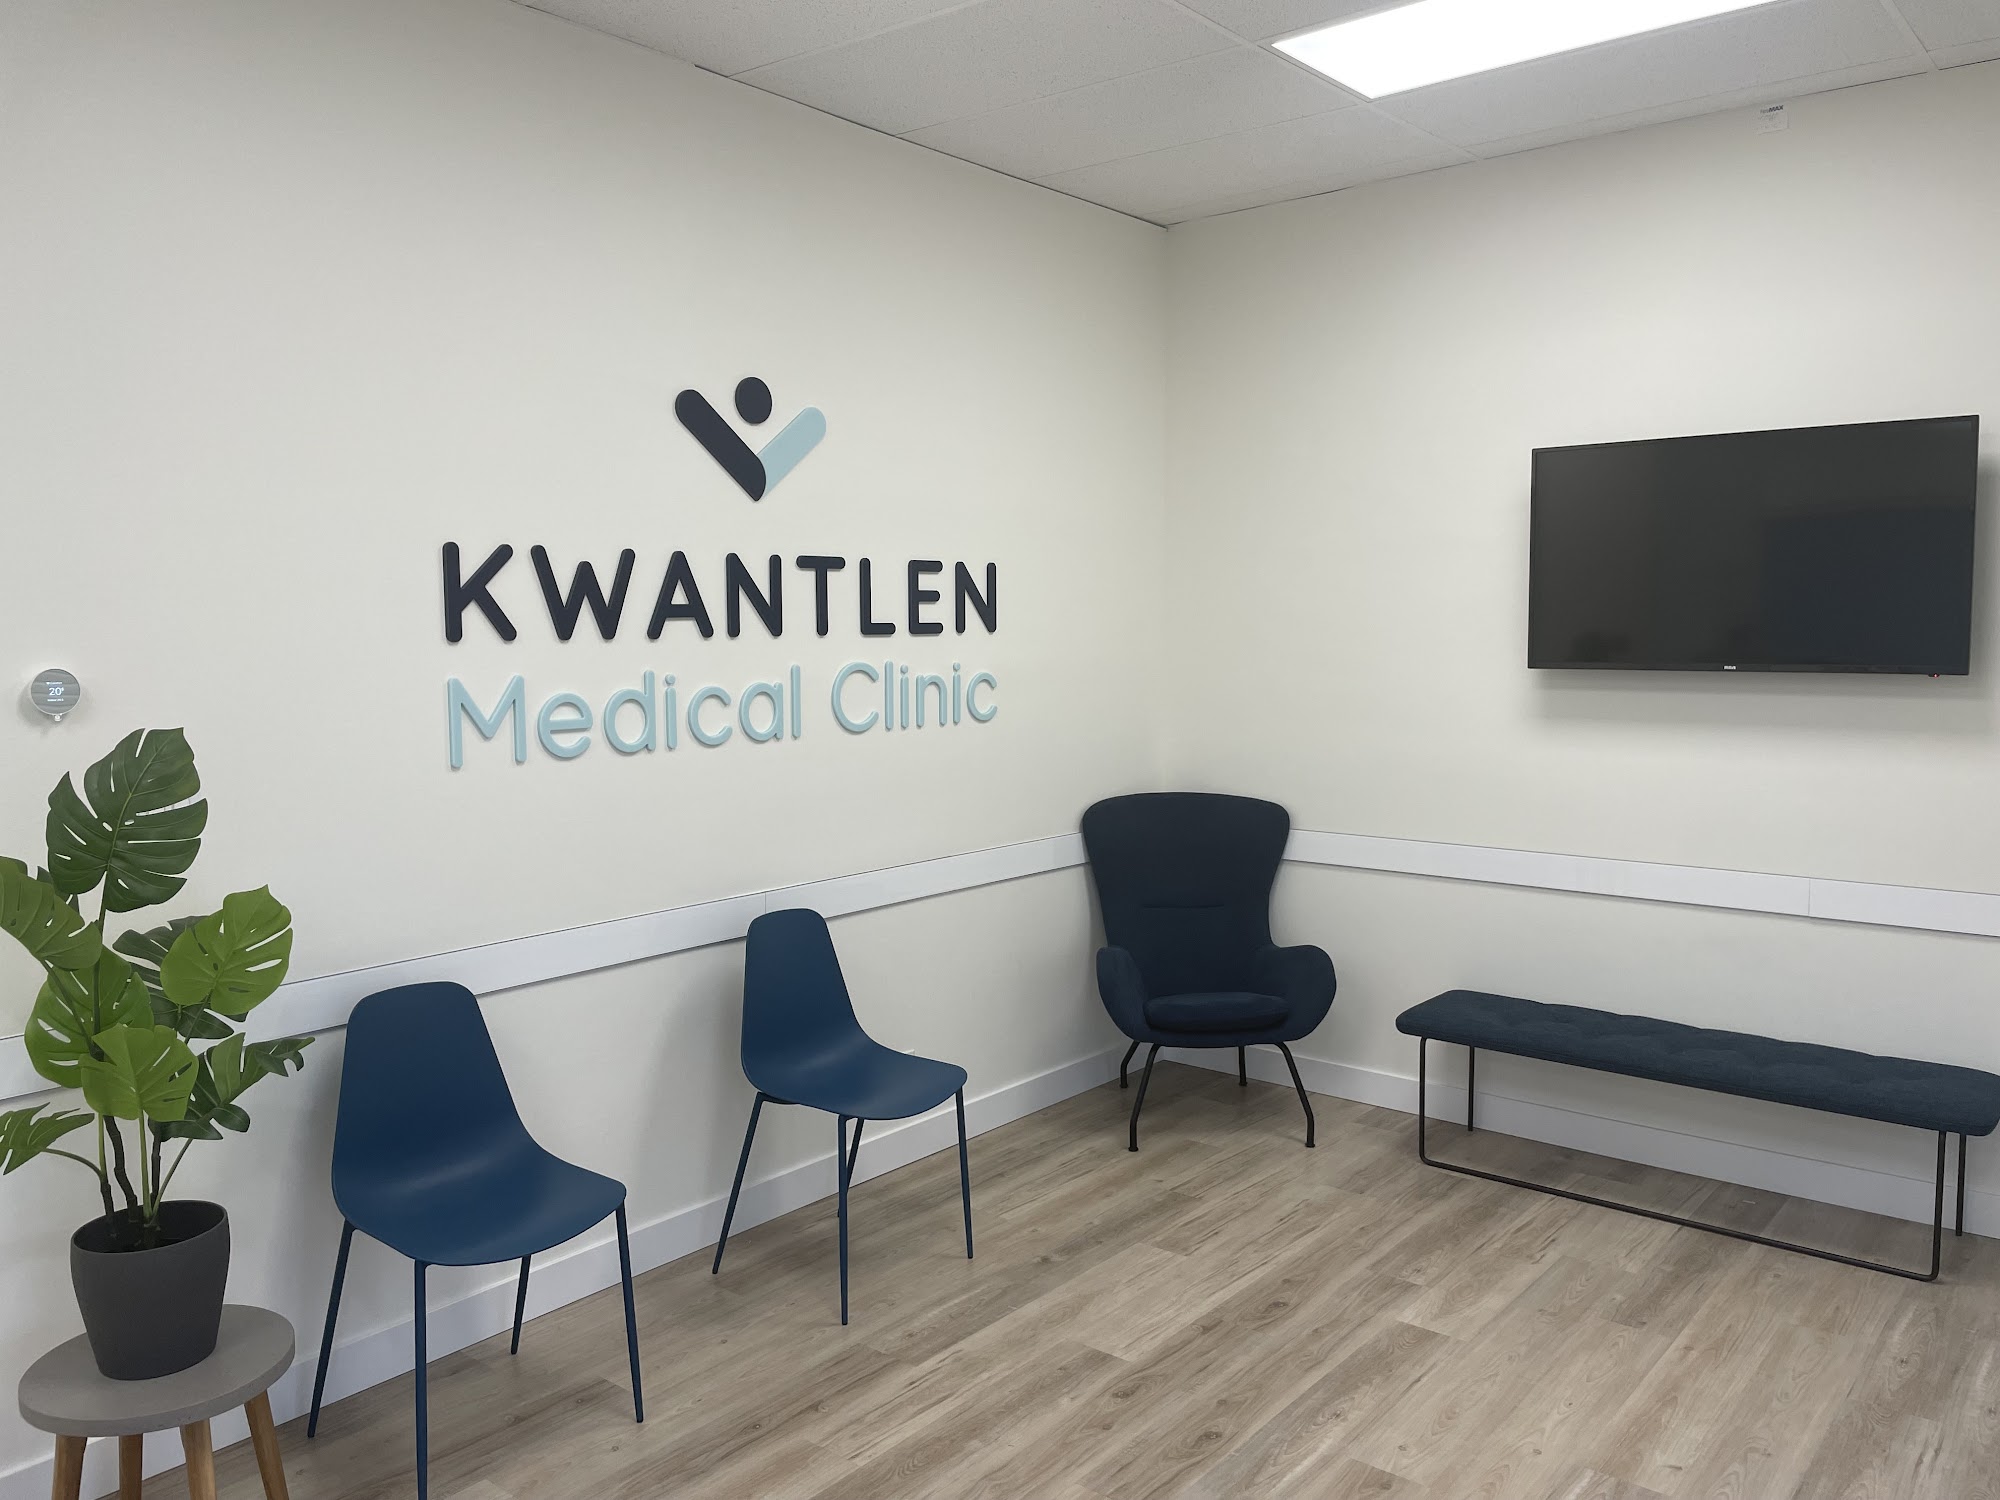 Kwantlen Medical Clinic